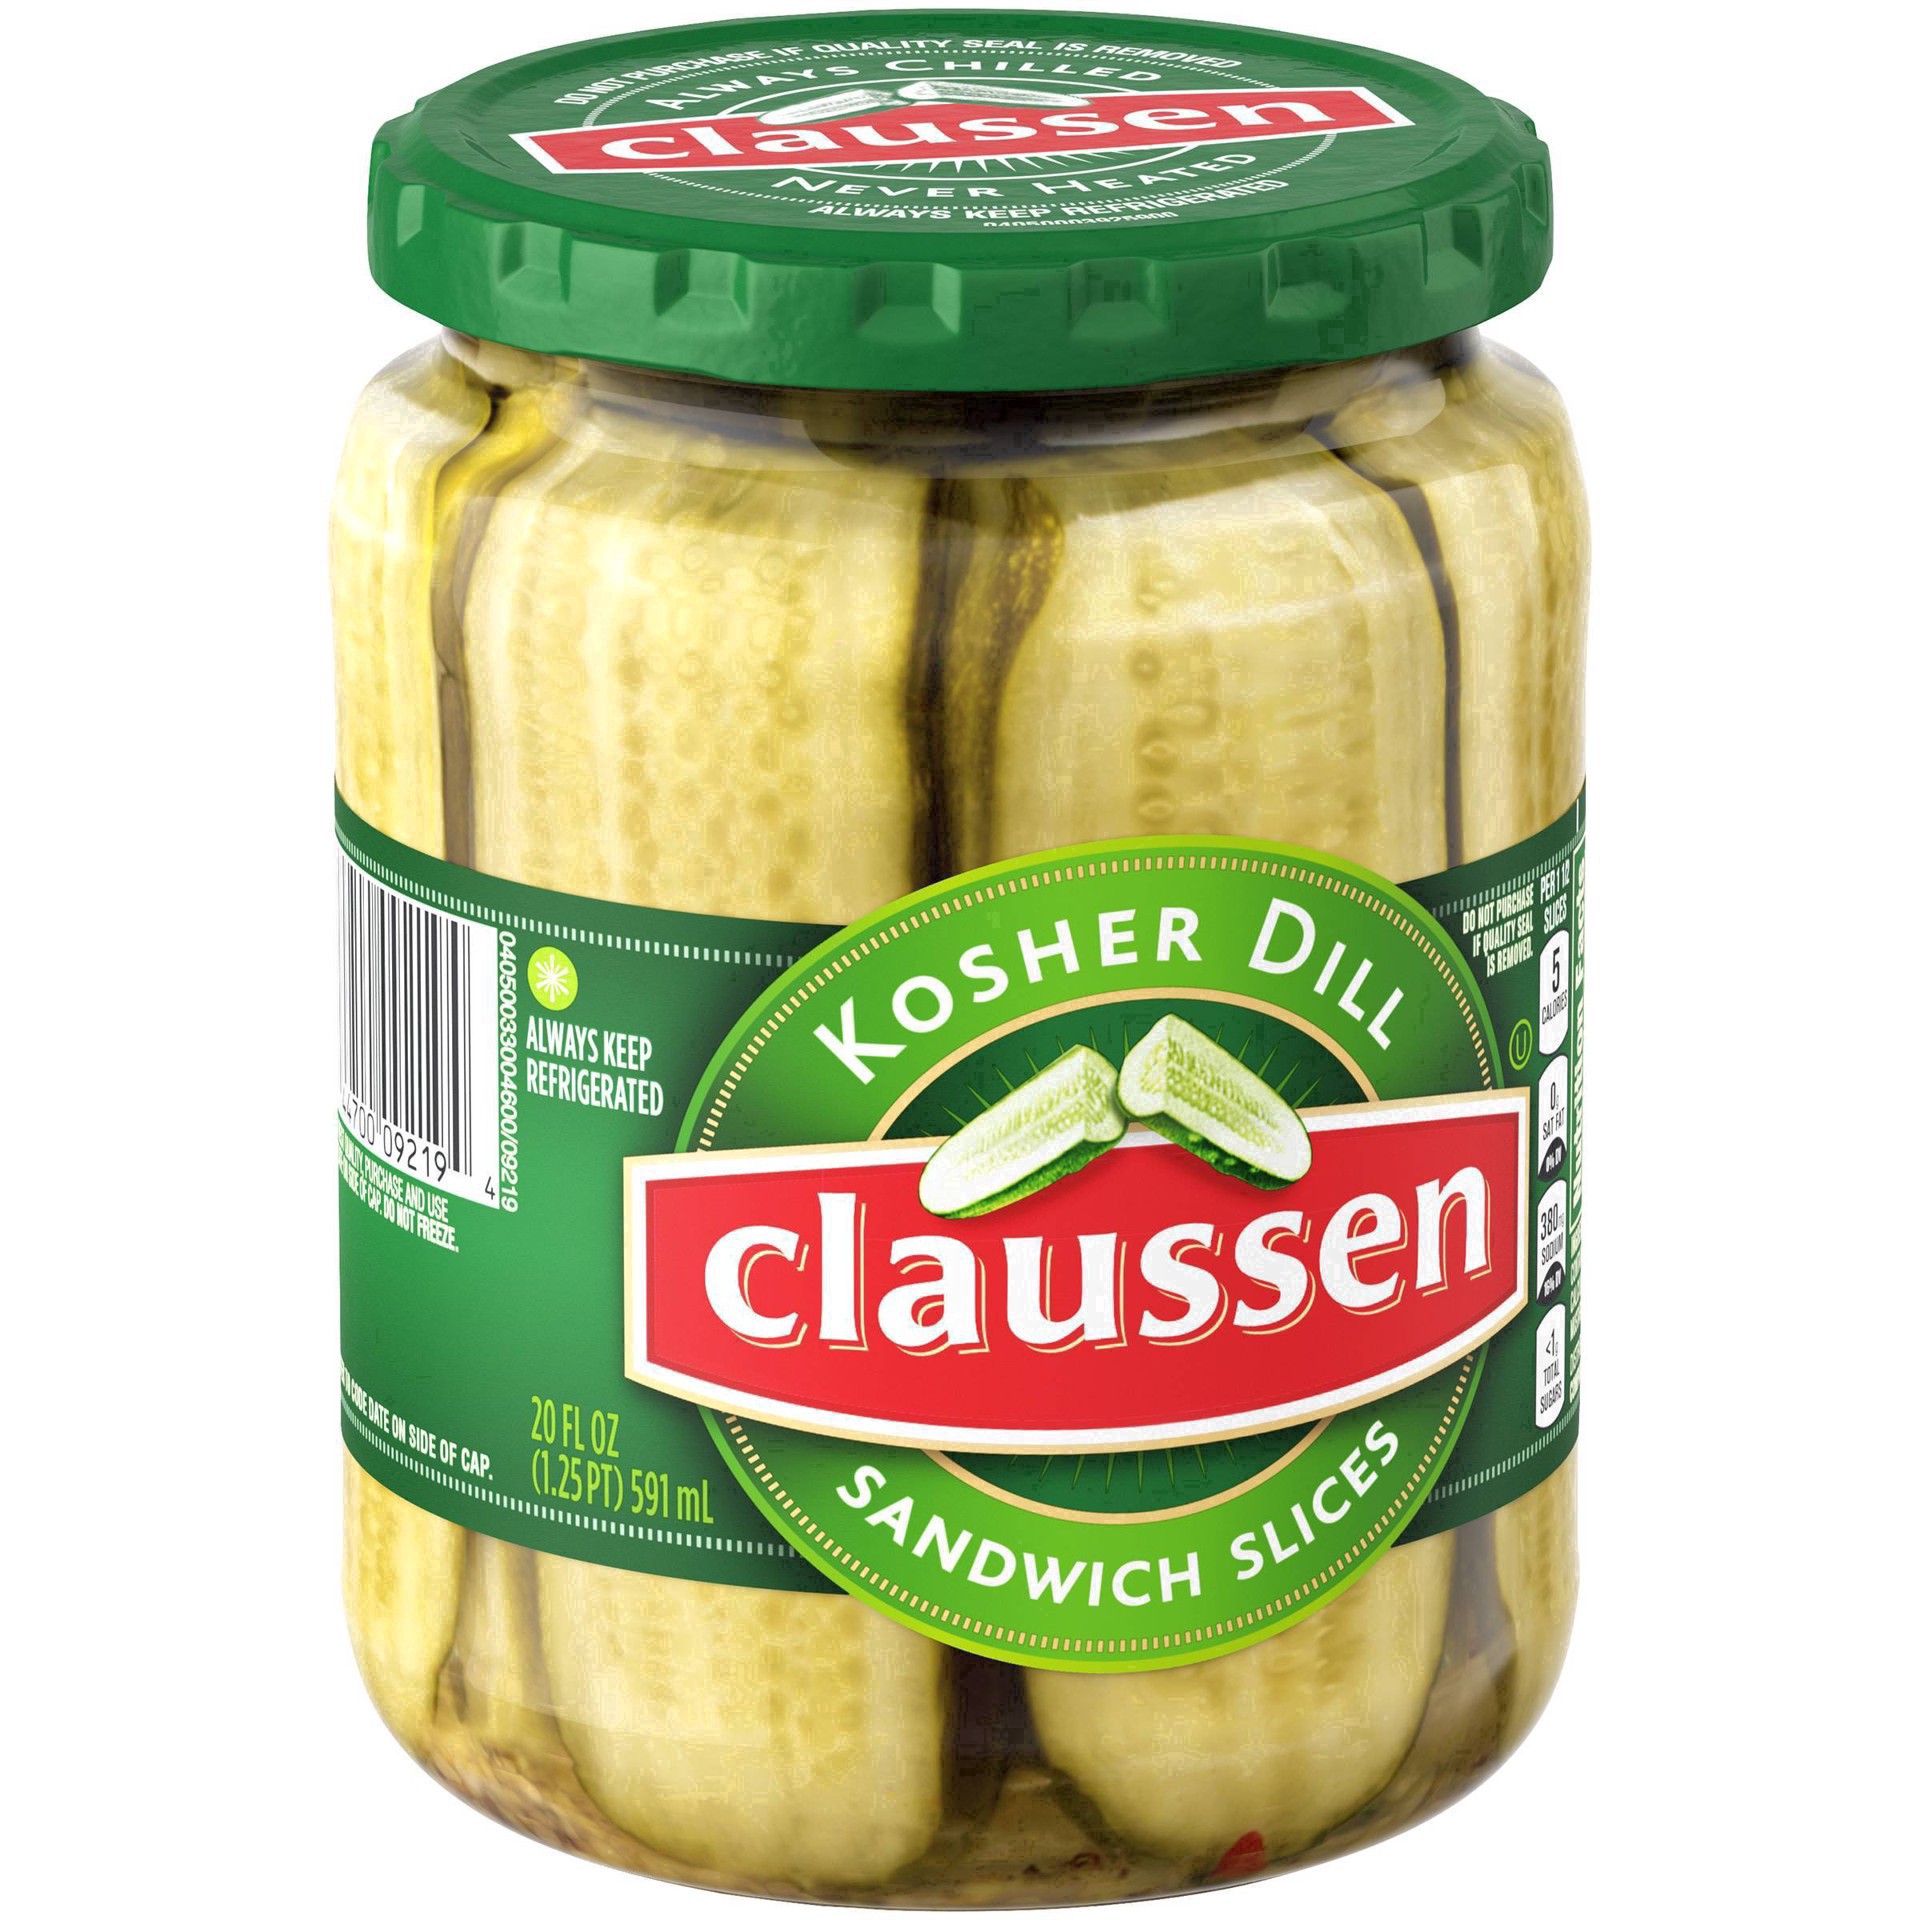 slide 5 of 144, Claussen Kosher Dill Pickle Sandwich Slices, 20 fl. oz. Jar, 20 fl oz